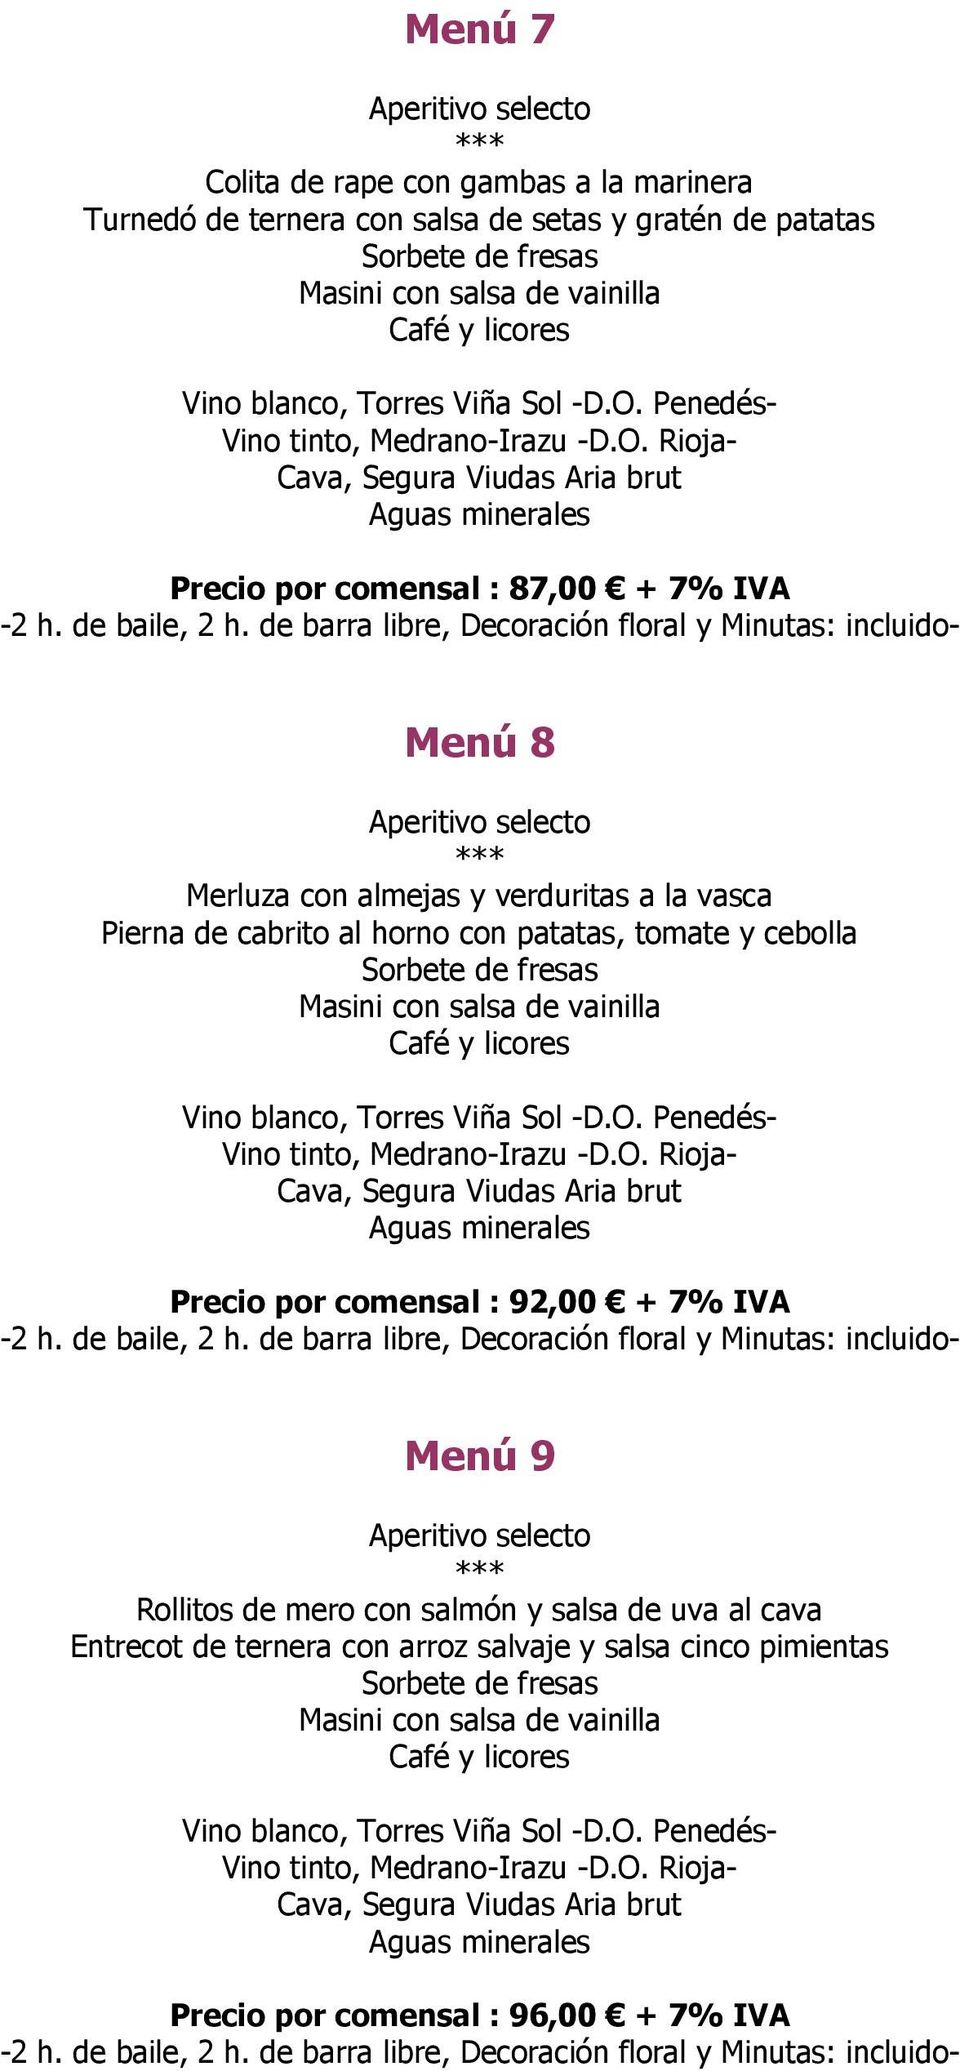 Rioja- Cava, Segura Viudas Aria brut Precio por comensal : 87,00 + 7% IVA Menú 8 Merluza con almejas y verduritas a la vasca Pierna de cabrito al horno con patatas, tomate y cebolla Sorbete de fresas